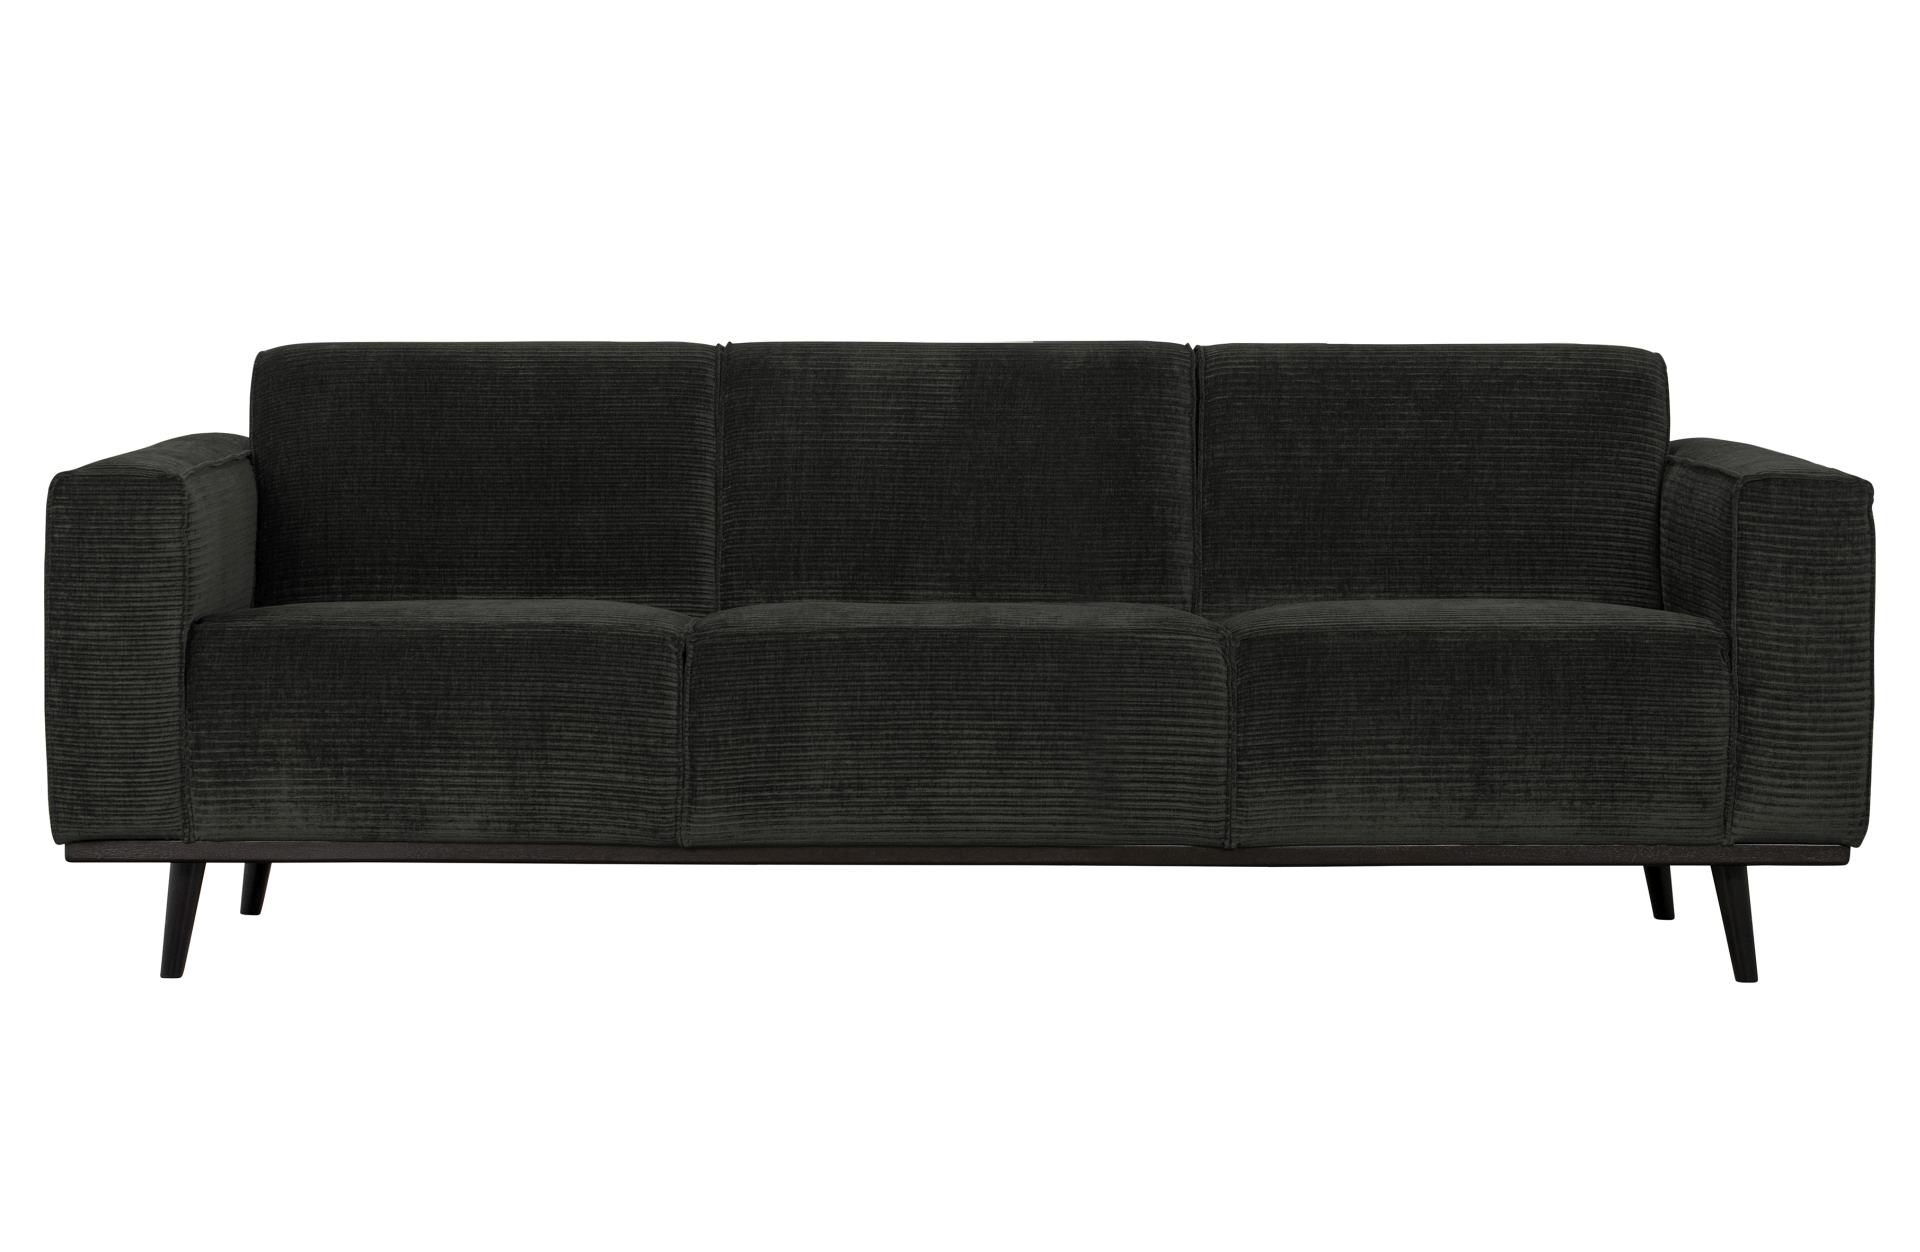 Das Sofa Statement überzeugt mit seinem modernen Design. Gefertigt wurde es aus gewebten Jacquard, welches einen Graphit Farbton besitzen. Das Gestell ist aus Birkenholz und hat eine schwarze Farbe. Das Sofa hat eine Breite von 230 cm.